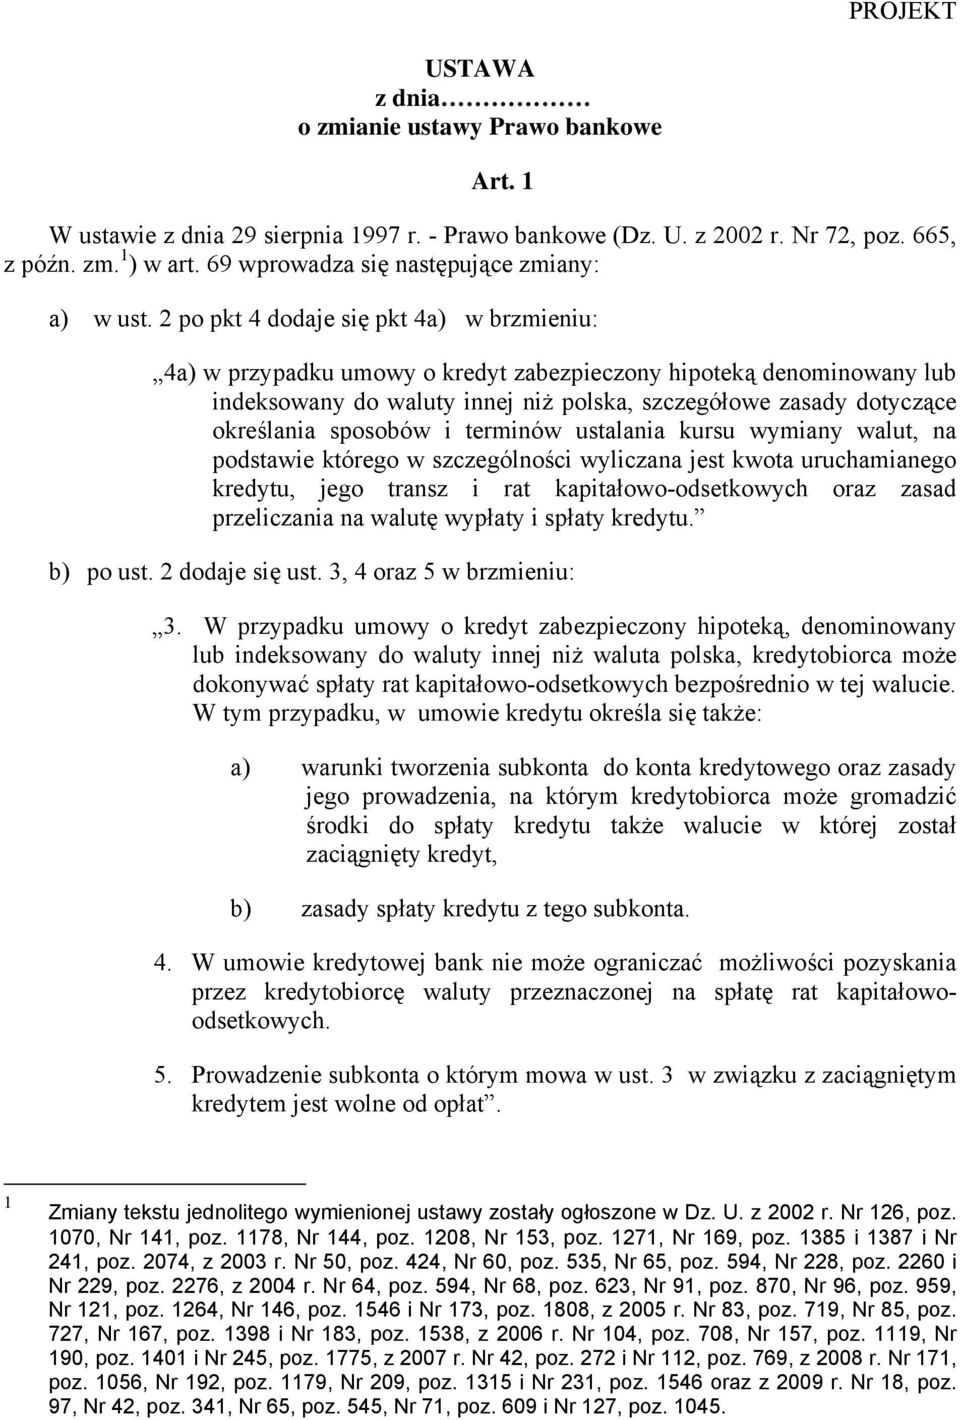 2 po pkt 4 dodaje się pkt 4a) w brzmieniu: 4a) w przypadku umowy o kredyt zabezpieczony hipoteką denominowany lub indeksowany do waluty innej niż polska, szczegółowe zasady dotyczące określania